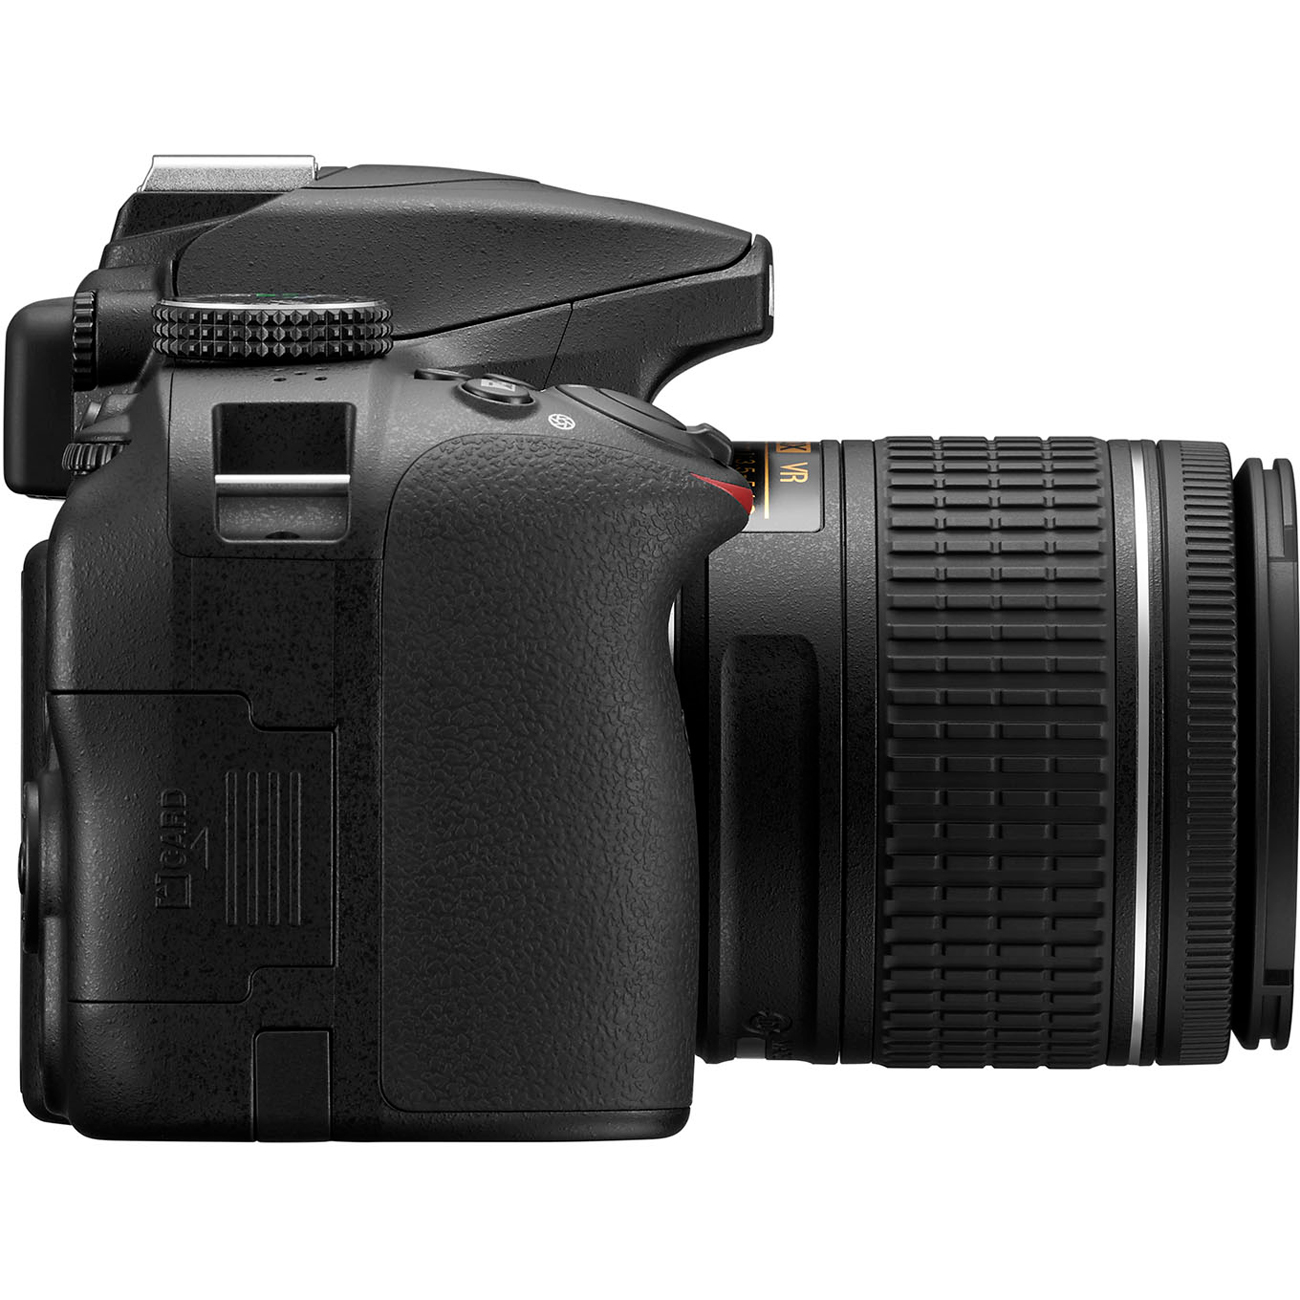 Nikon D3400/D3500 DSLR Camera with 18:55mm Lens (Black) & Sigma 70:300mm SLD DG Lens Package, Black Bundle 64GB SDXC Memory Card Supreme Bundle - image 6 of 10